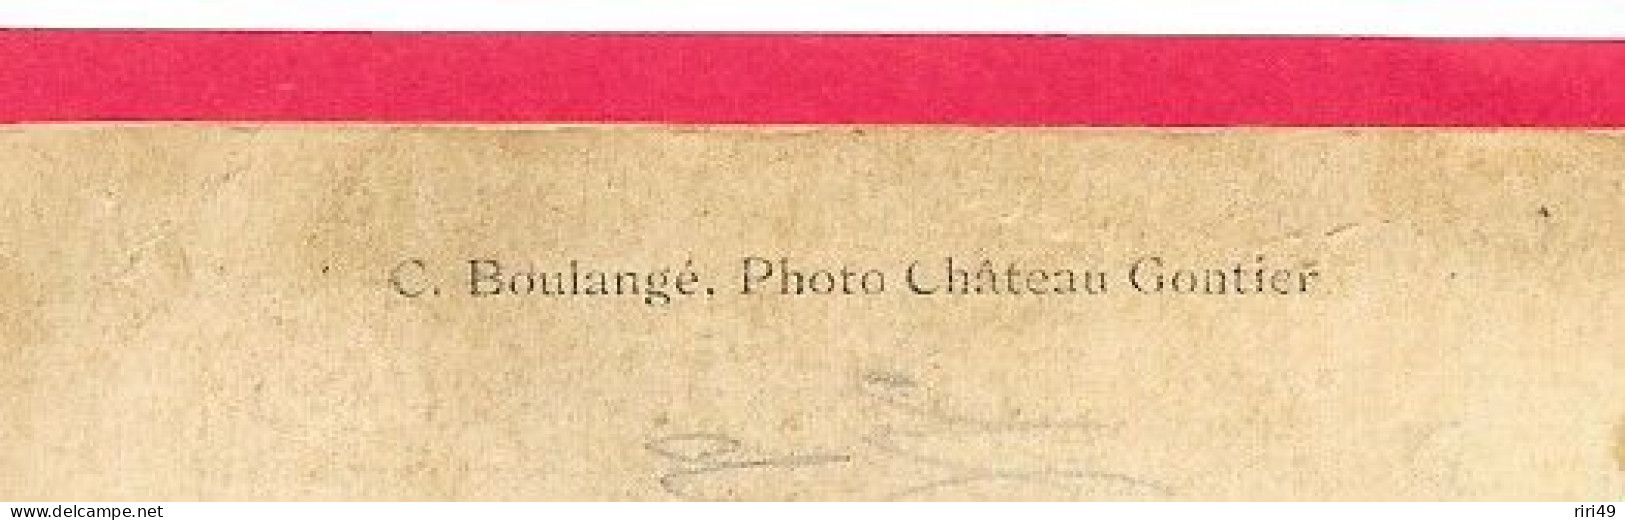 Cpa  166ème Régiment, 166e, Photographe C.Boulangé,  Photo Château Gontier, Dos Vierge, Voir Scannes Dos écrit - Personnages